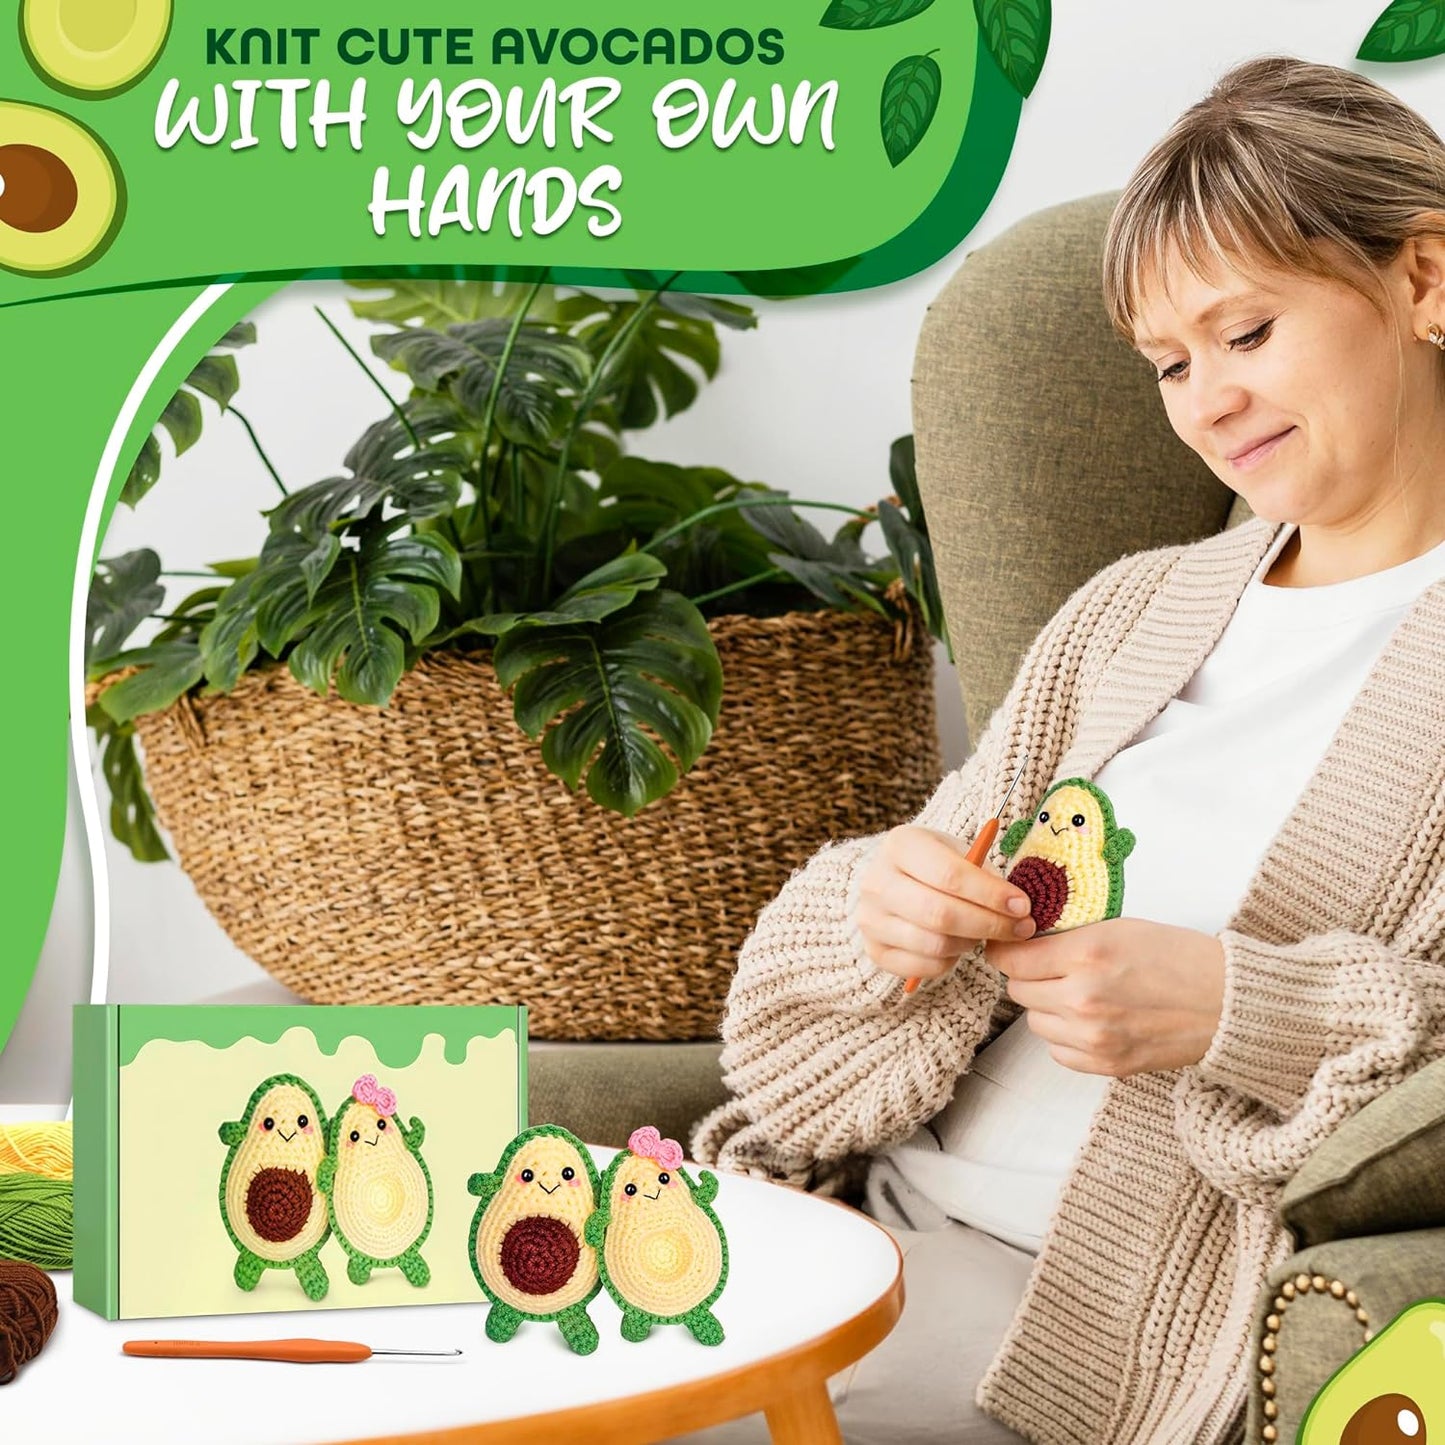 Avocado Crochet Kit for Beginners